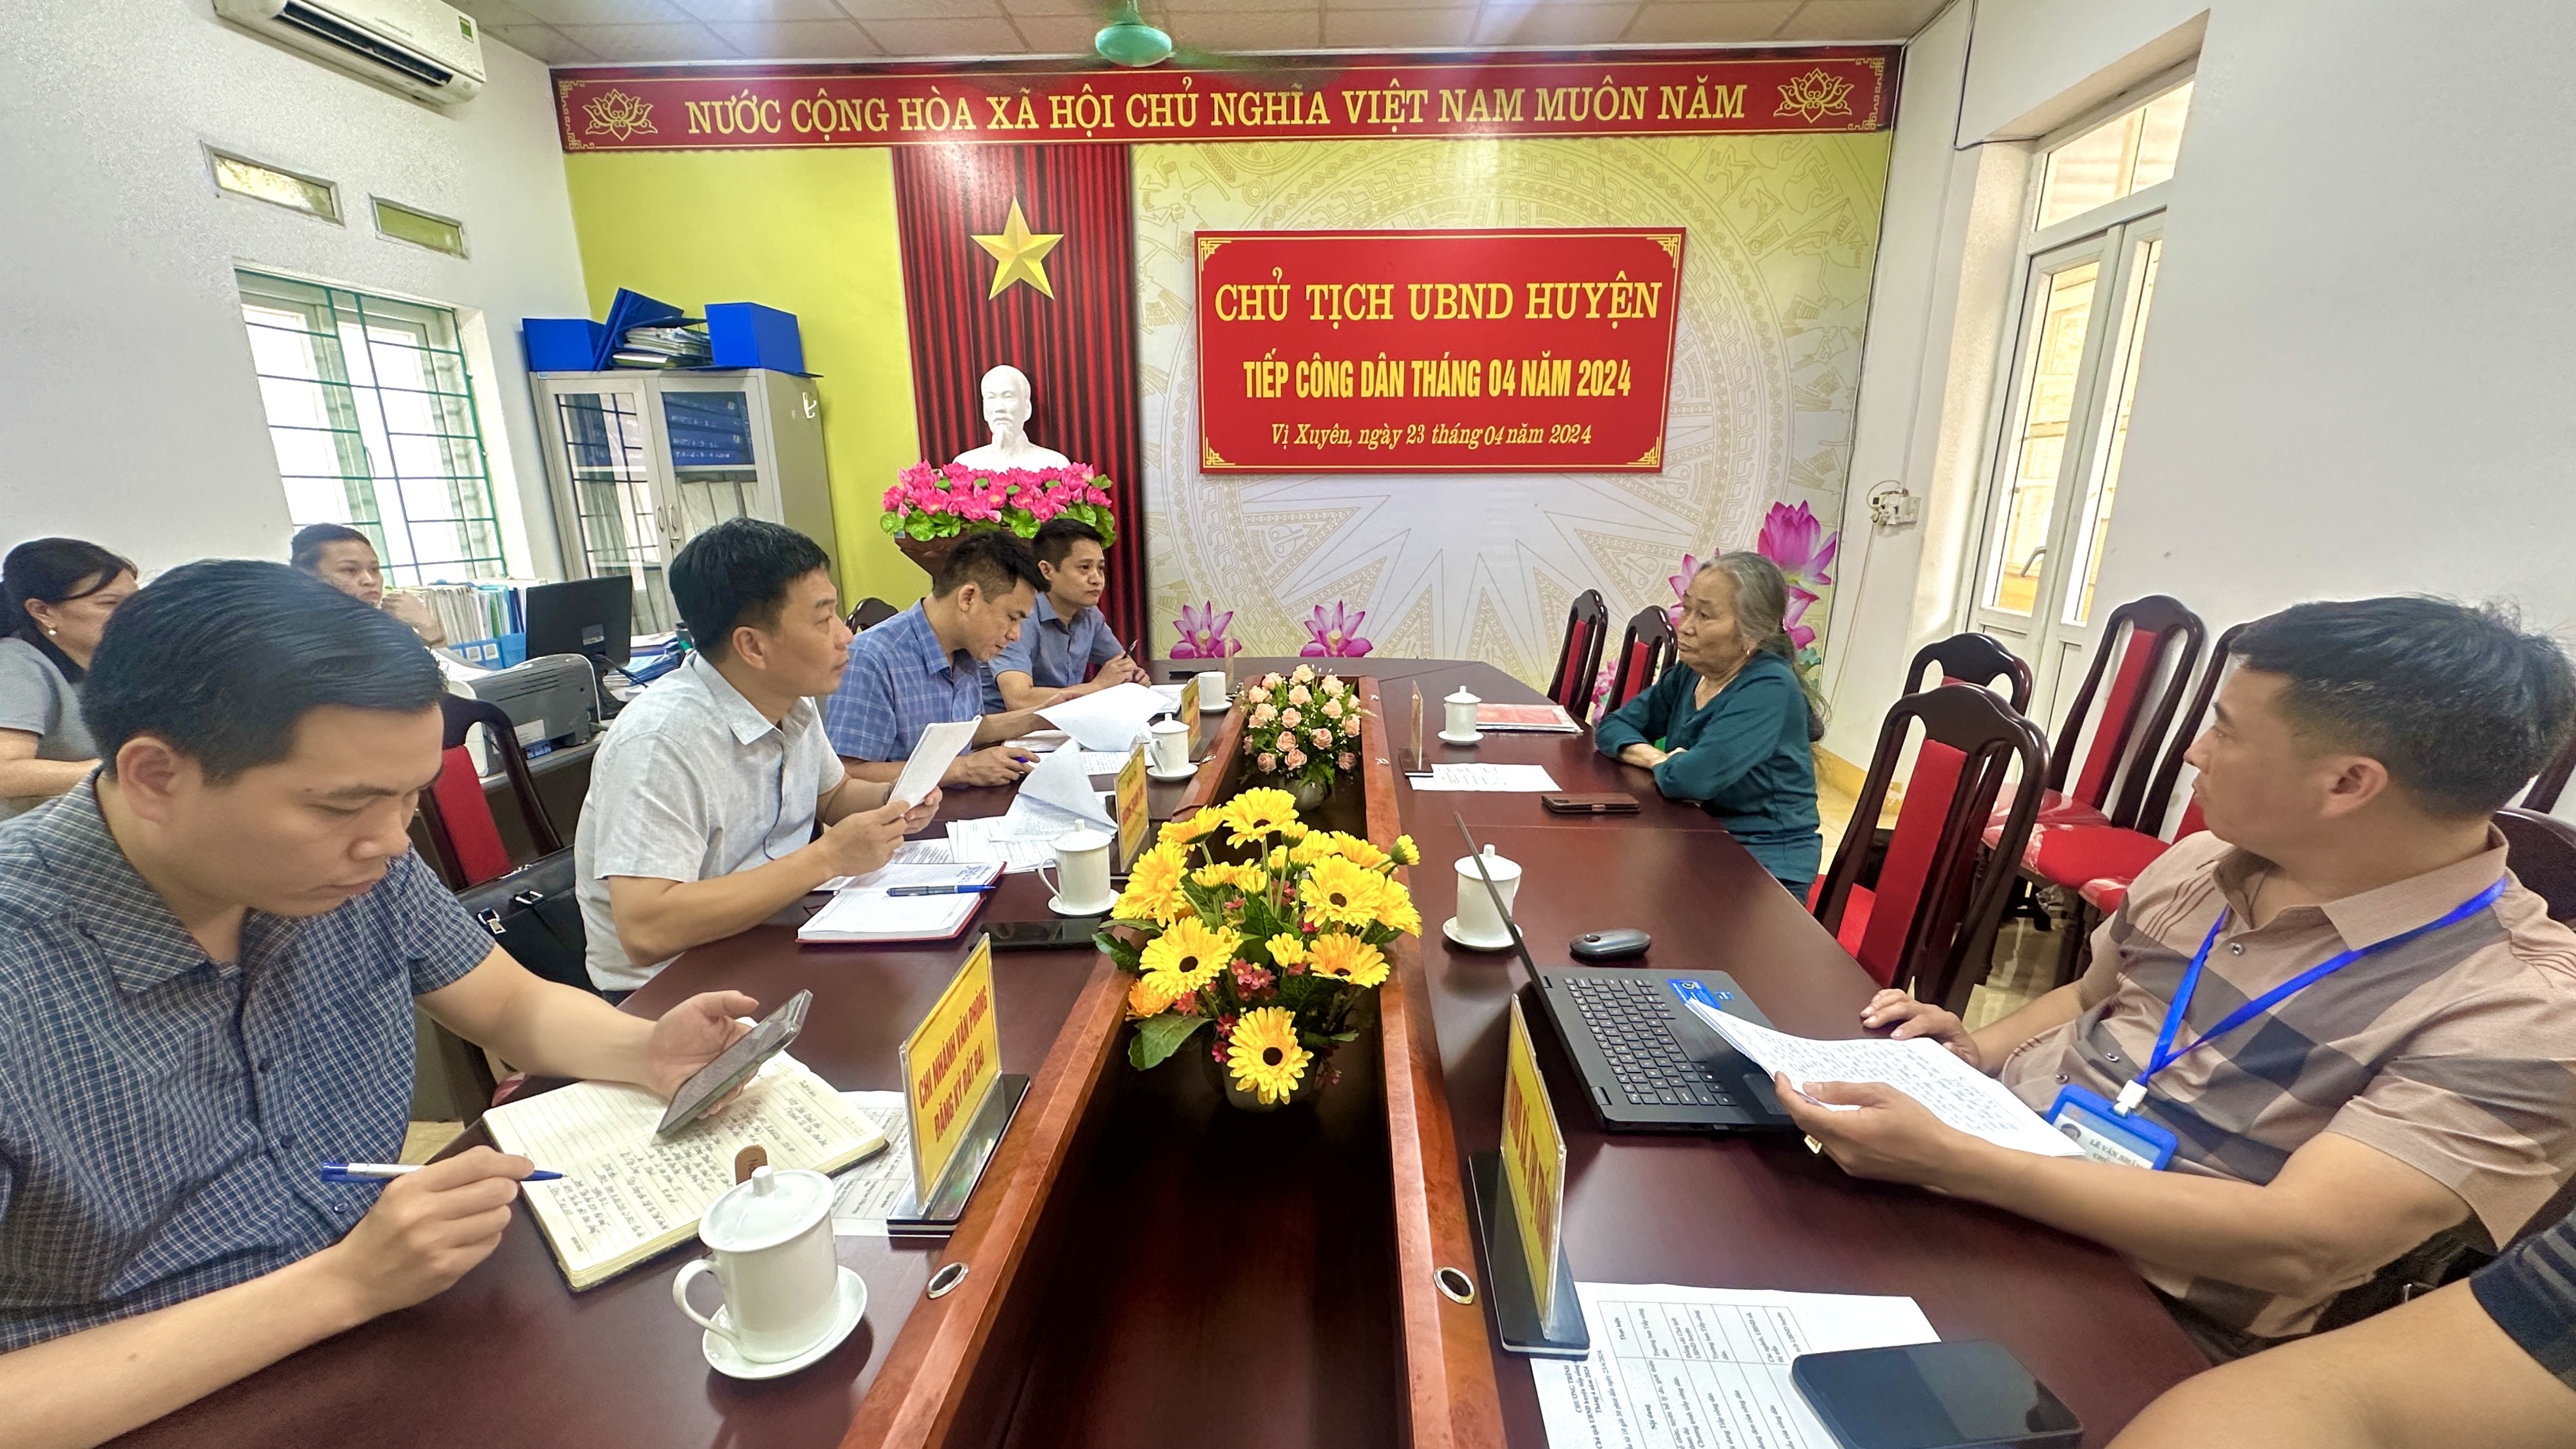 Chủ tịch UBND huyện Hoàng Thanh Tịnh tiếp công dân định kỳ tháng 4